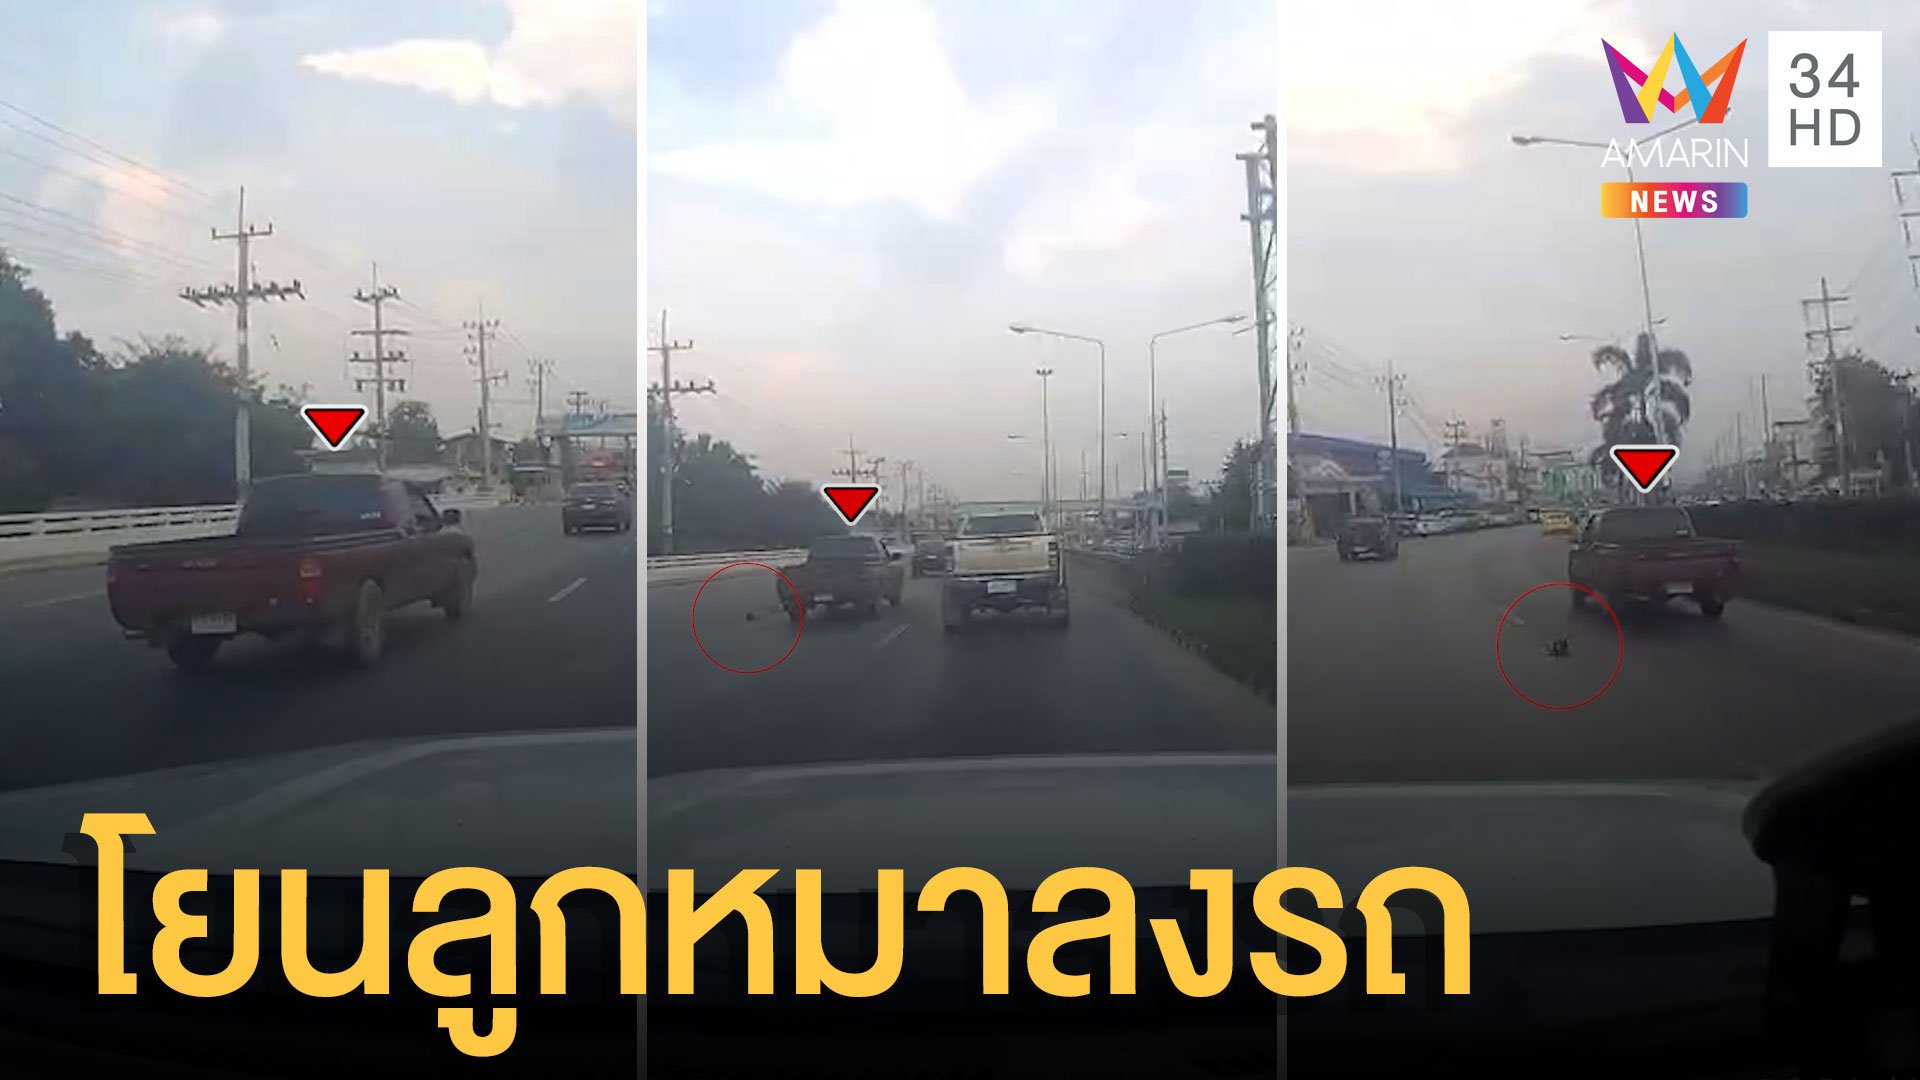 ใจร้ายมาก กระบะขับบนถนนโยนลูกหมาลงจากรถ | ข่าวเที่ยงอมรินทร์ | 22 พ.ย. 64 | AMARIN TVHD34